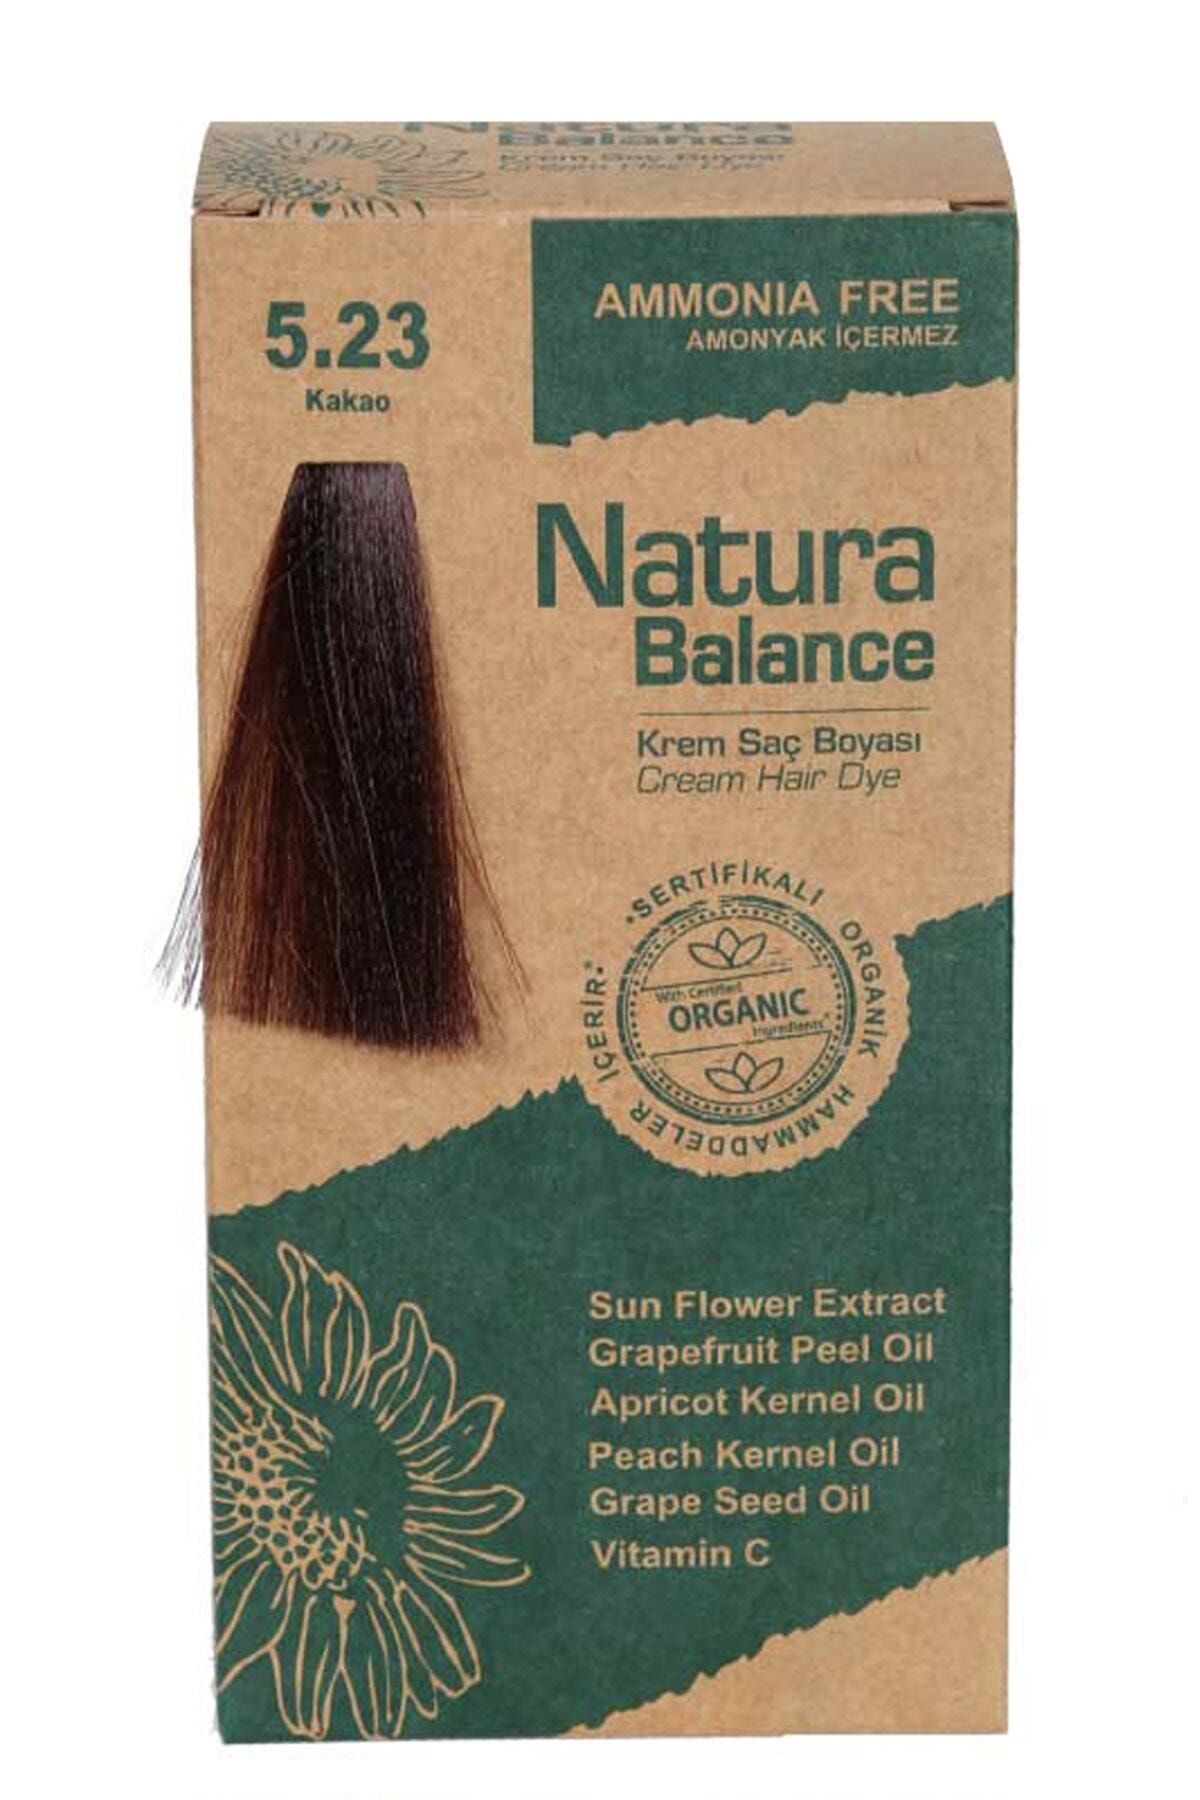 NATURABALANCE Natura Balance Saç Boyası - Organik Sertifikalı Kakao 5.23 8699367128094